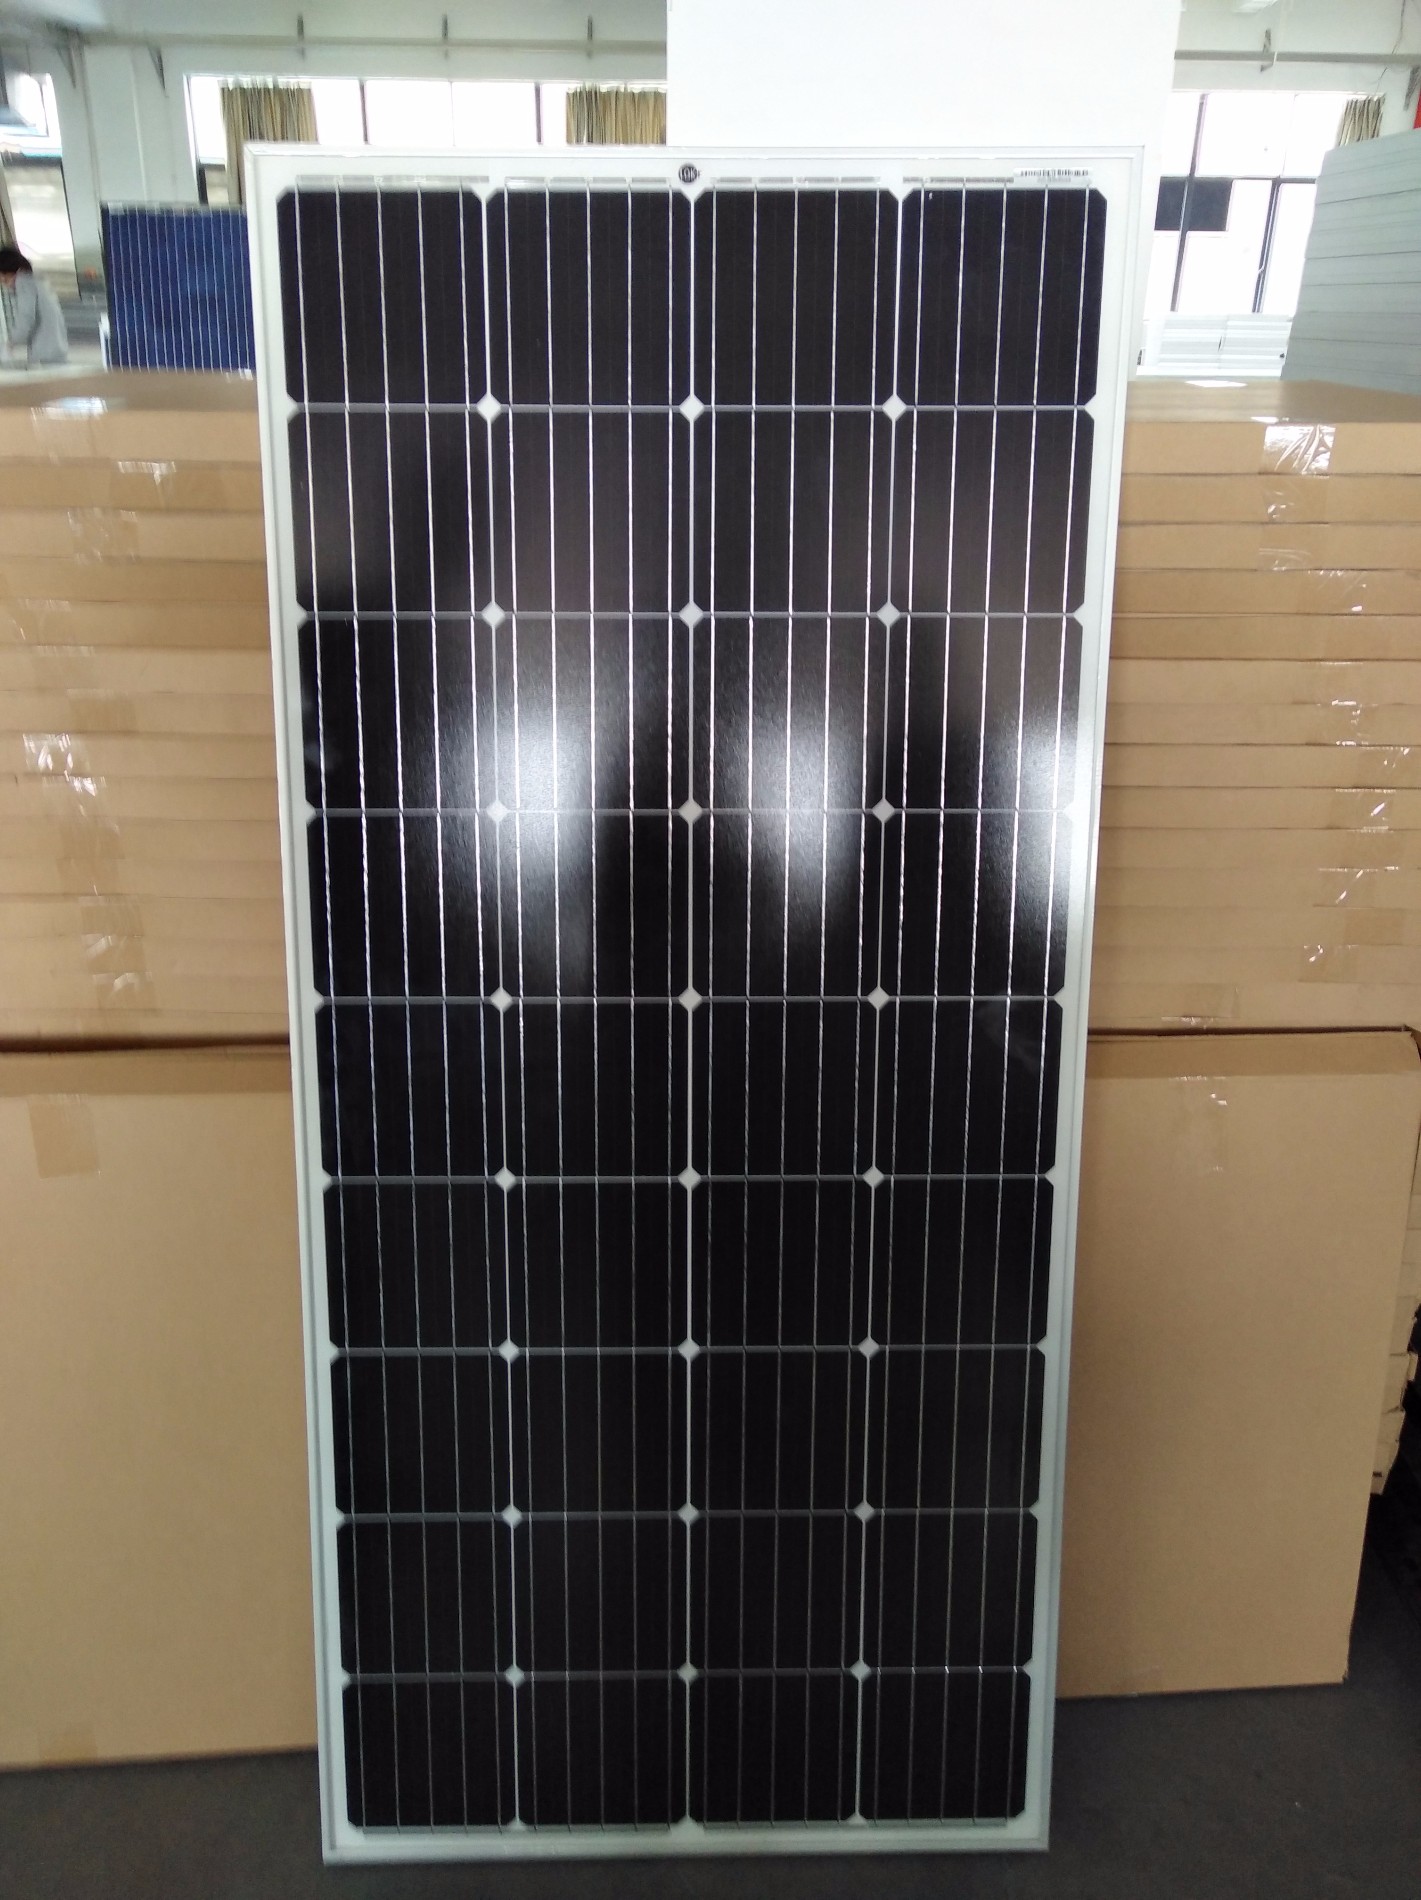 Venda Painel Solar Fotovoltaico Único 150W, Compre células e painéis solares Marcas